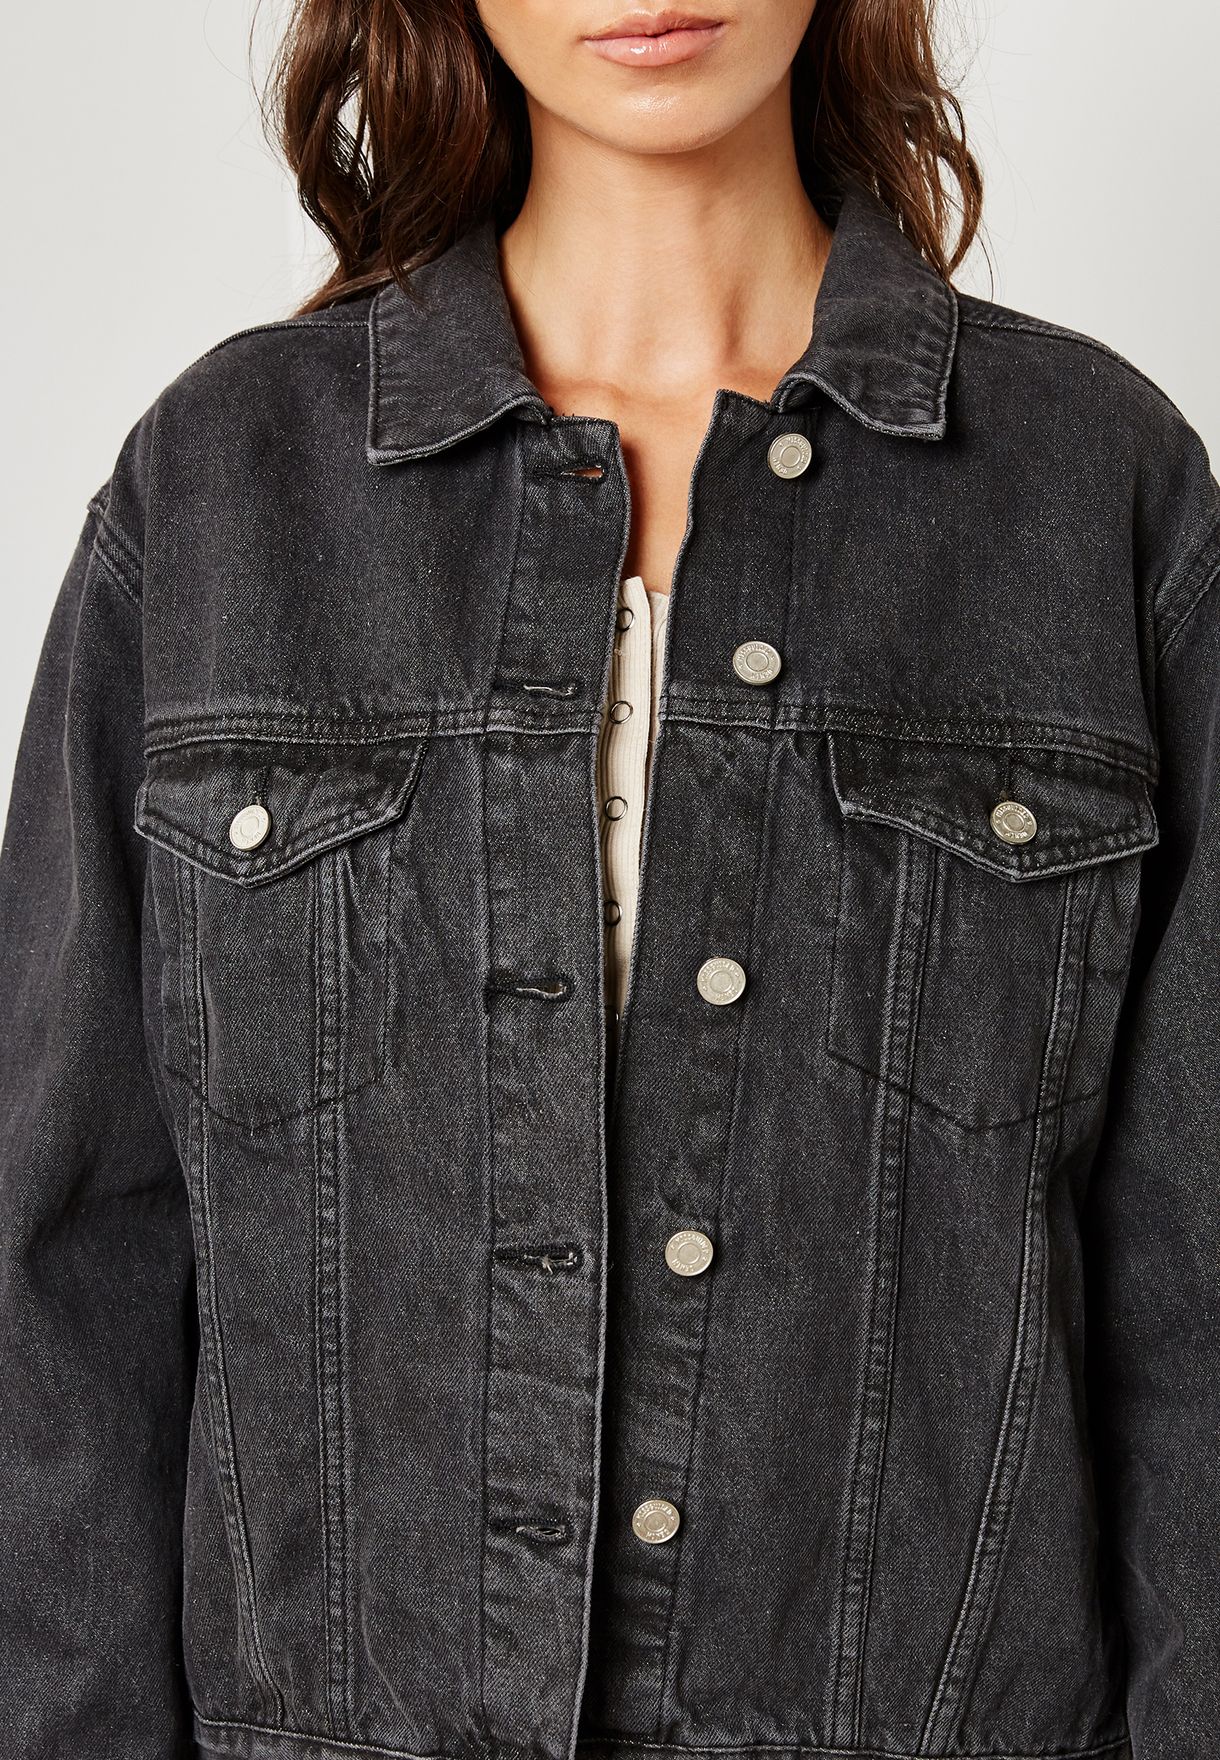 Buy > grey jean jacket womens > in stock